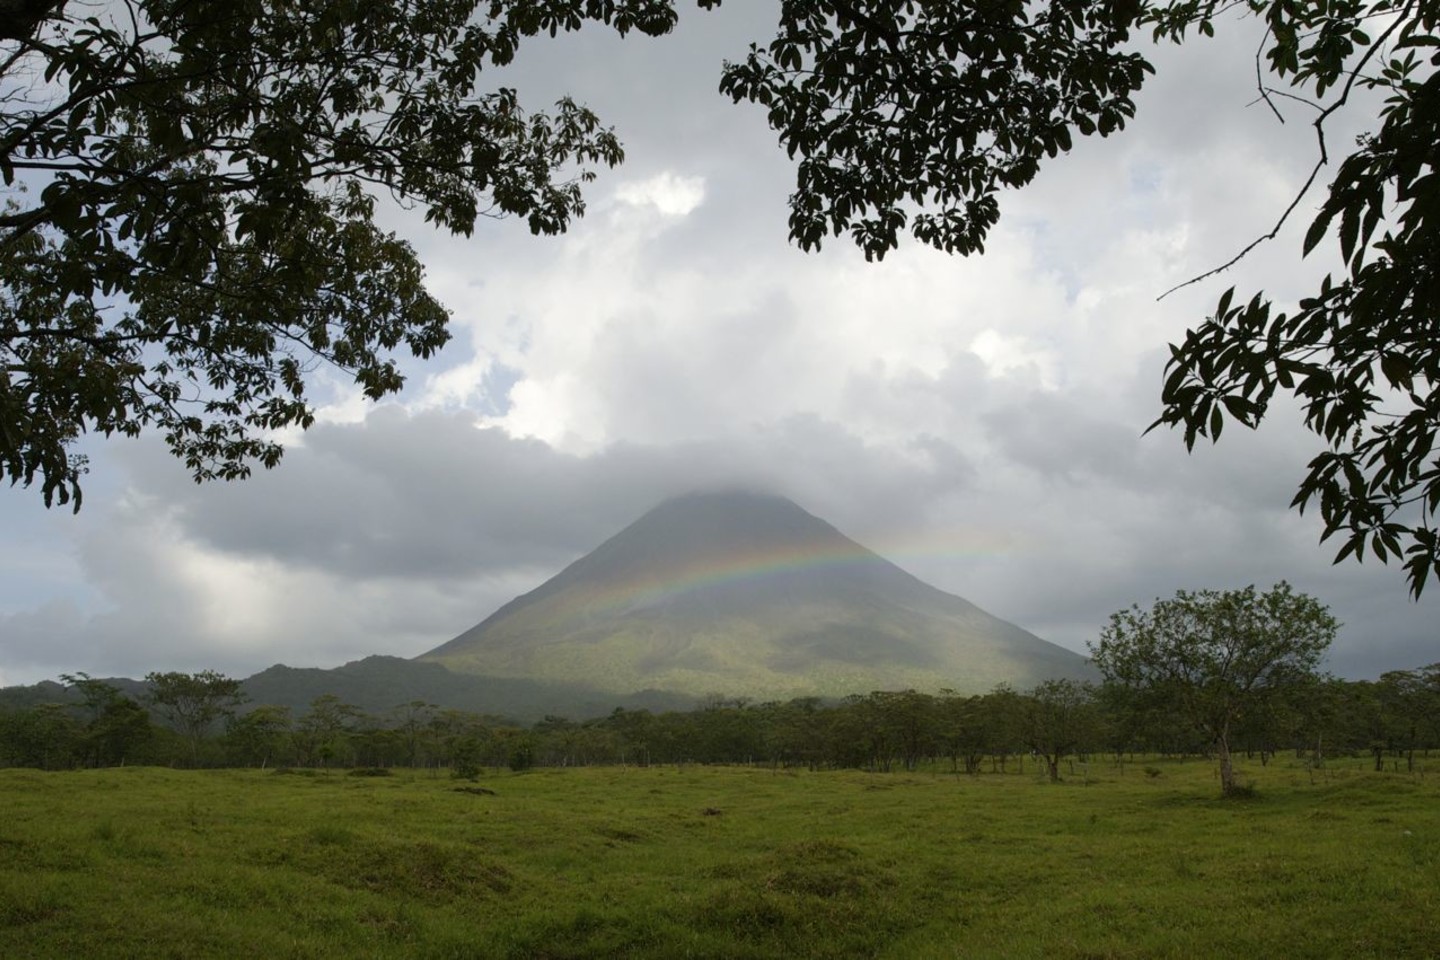  Didžioji Kosta Rikos teritorija apaugusi miškais, turtingais augalija bei gyvūnija, apie 23 proc. miškų paversti saugomais draustiniais ir nacionaliniais parkais.<br> R. Anusausko nuotr.